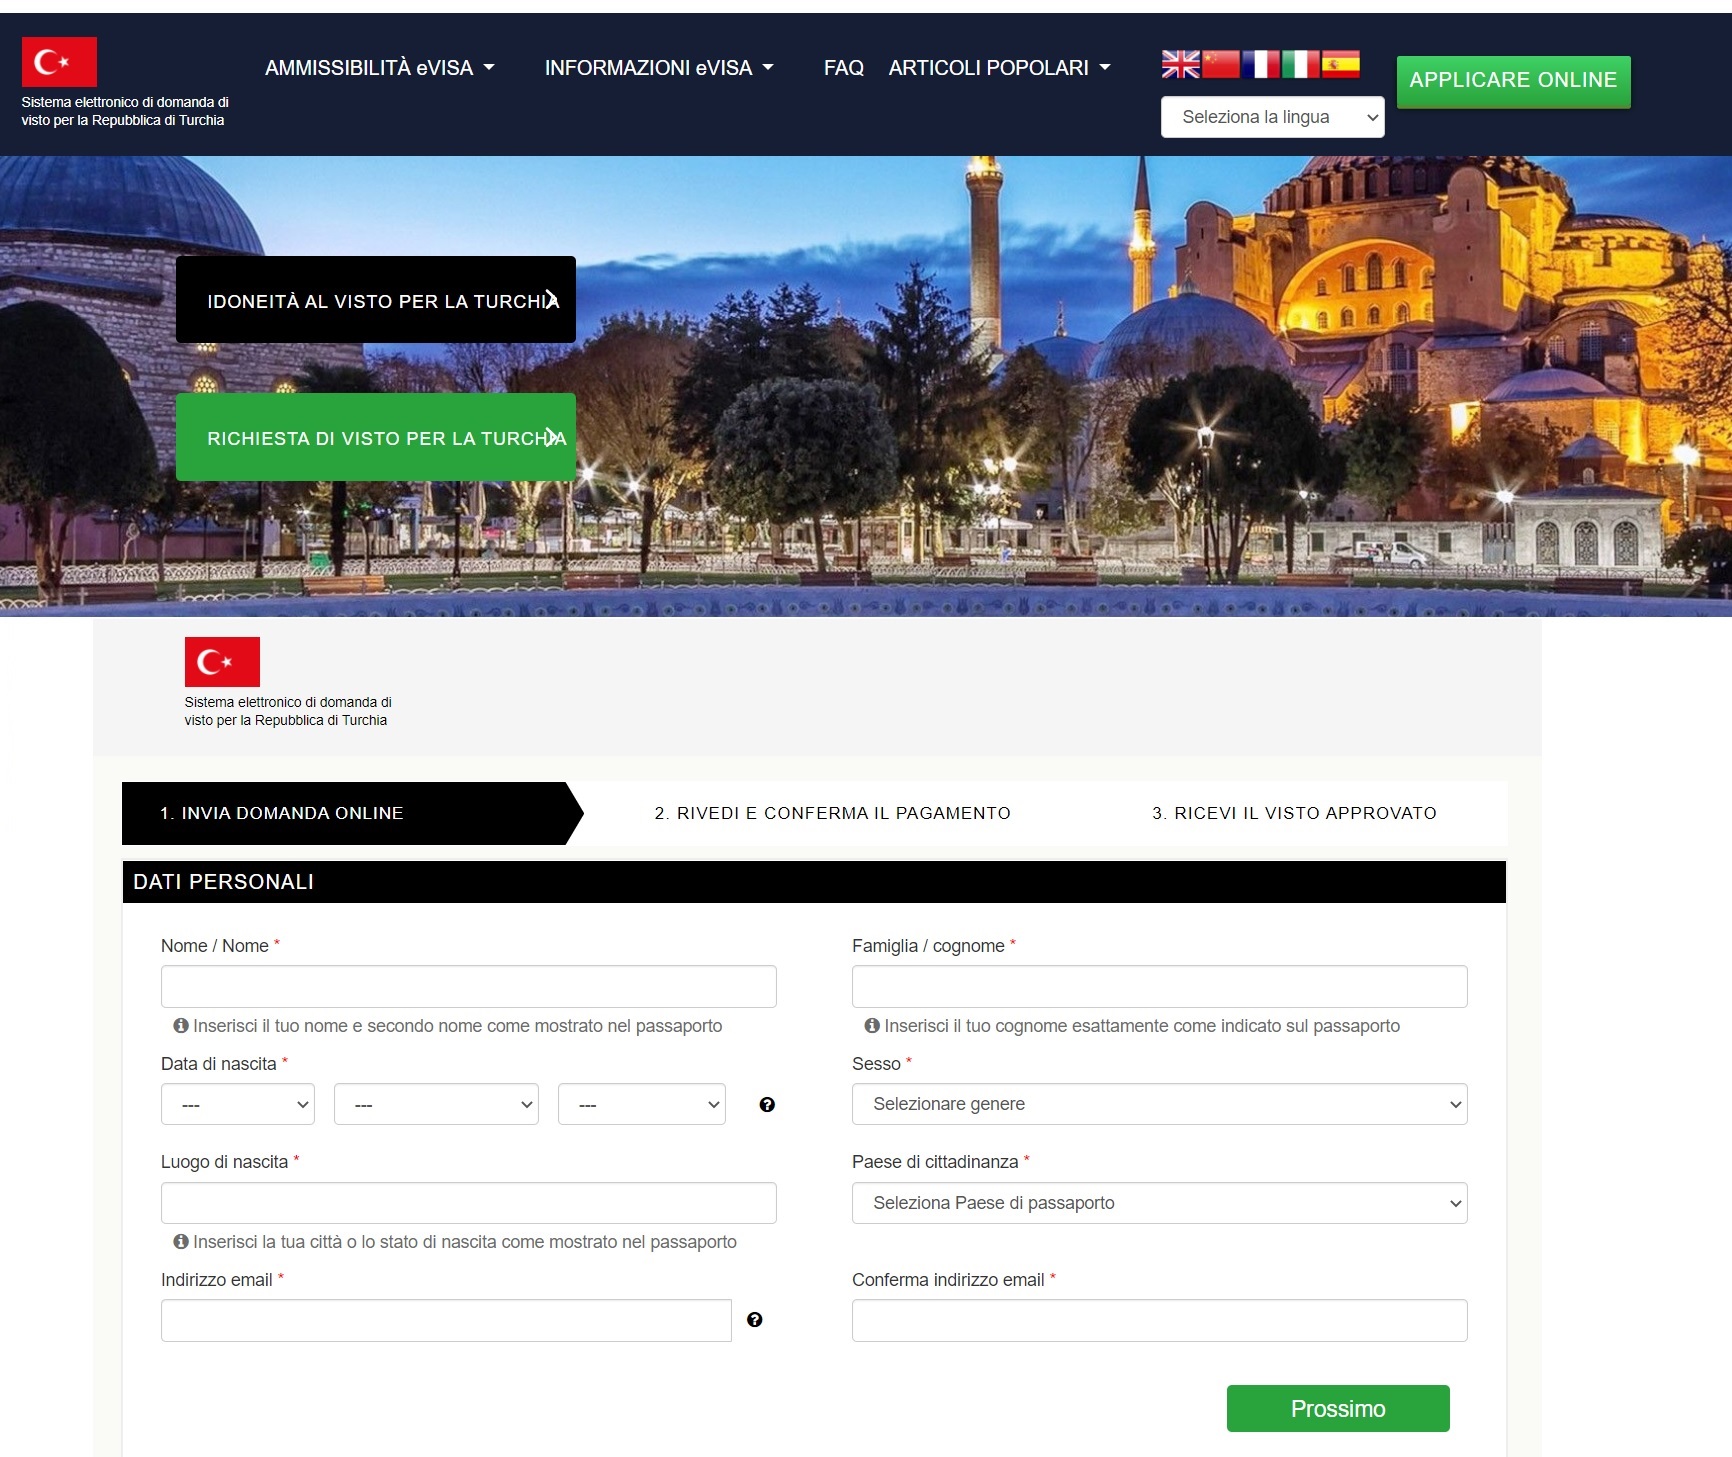 دعم اللغة في تأشيرة تركيا الإلكترونية